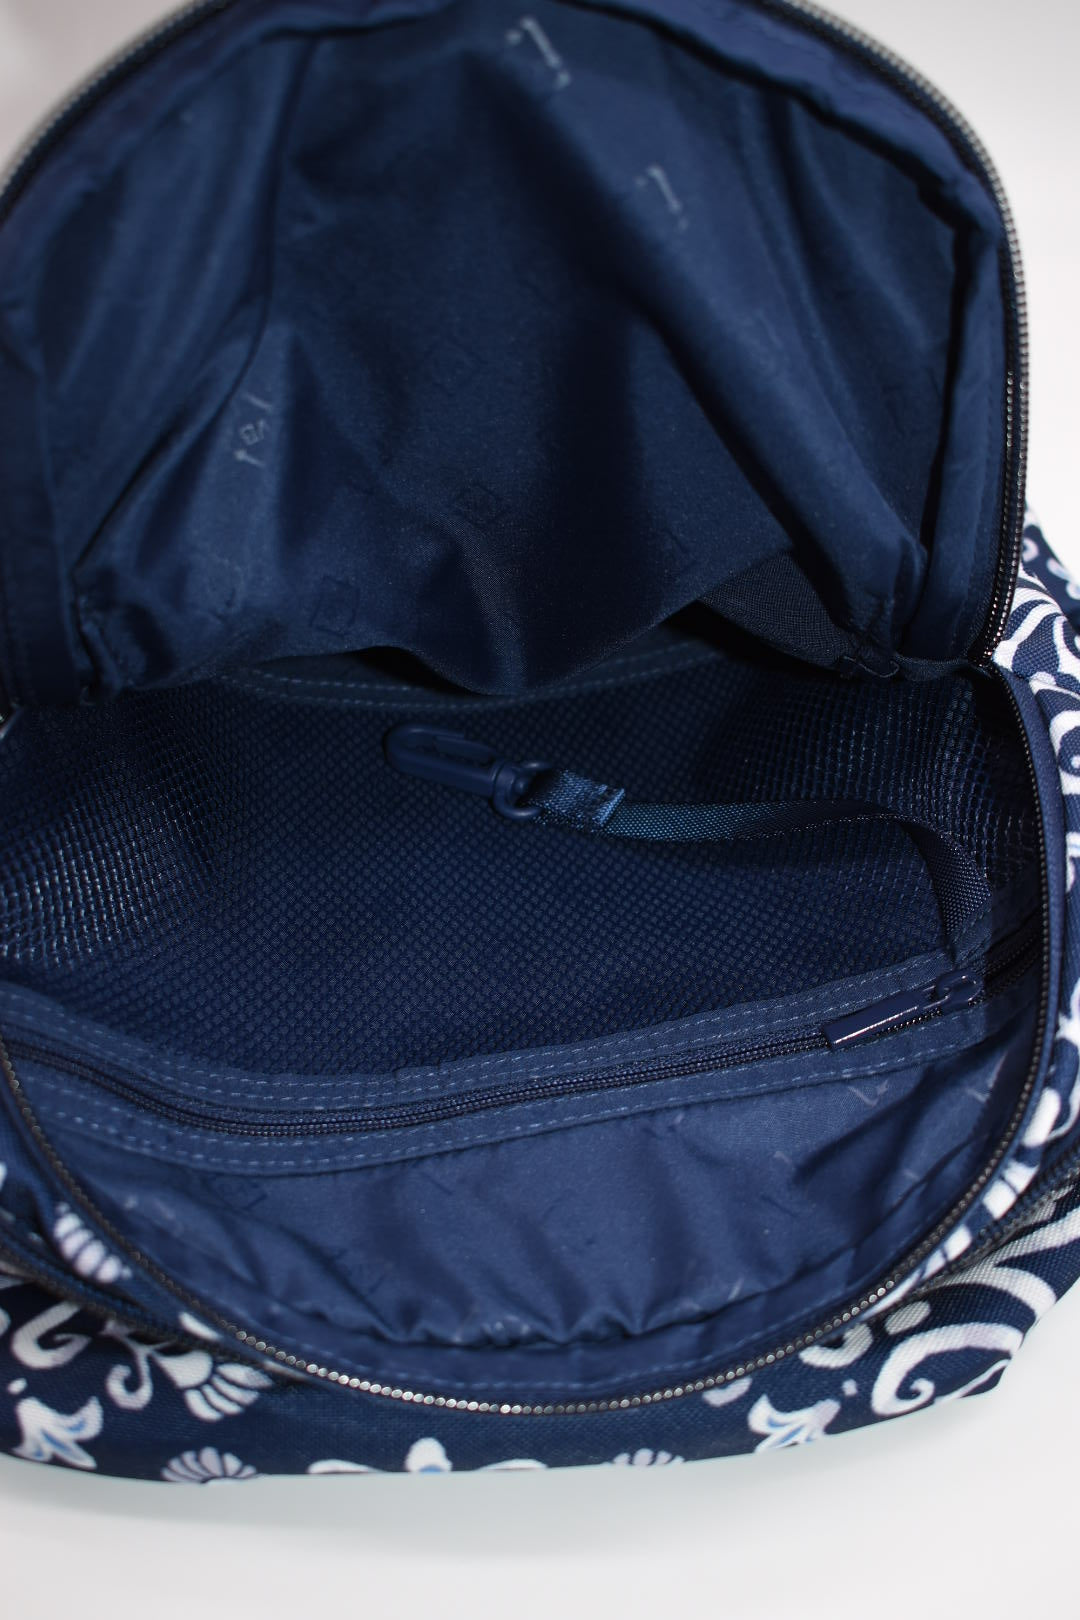 Vera Bradley Lighten Up Sporty Backpack in "Steel Blue Medallion" Pattern